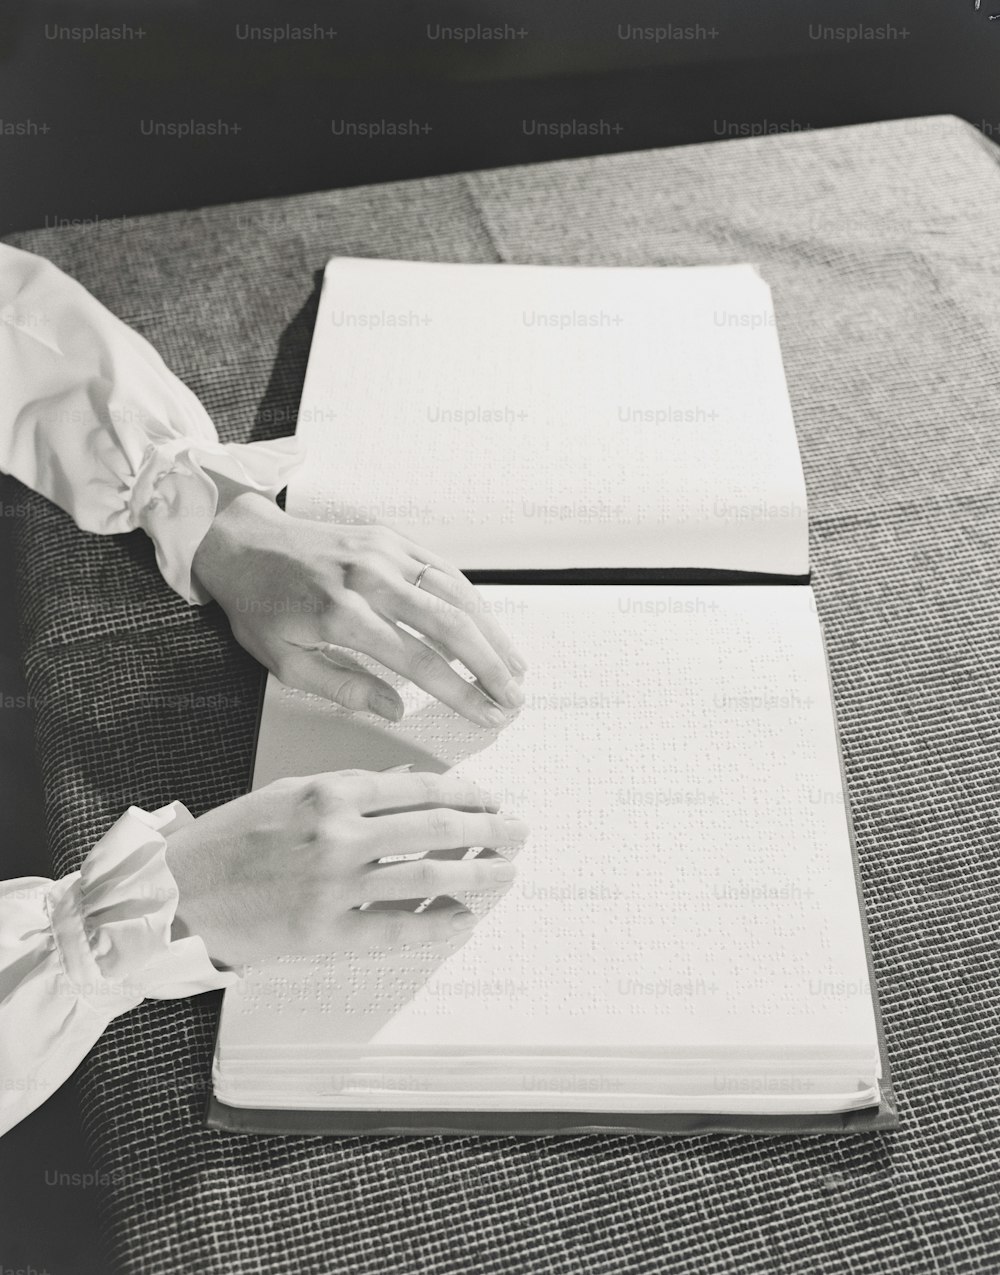 STATI UNITI - 1940 CIRCA: mani di donna che leggono un libro in Braille sul tavolo.